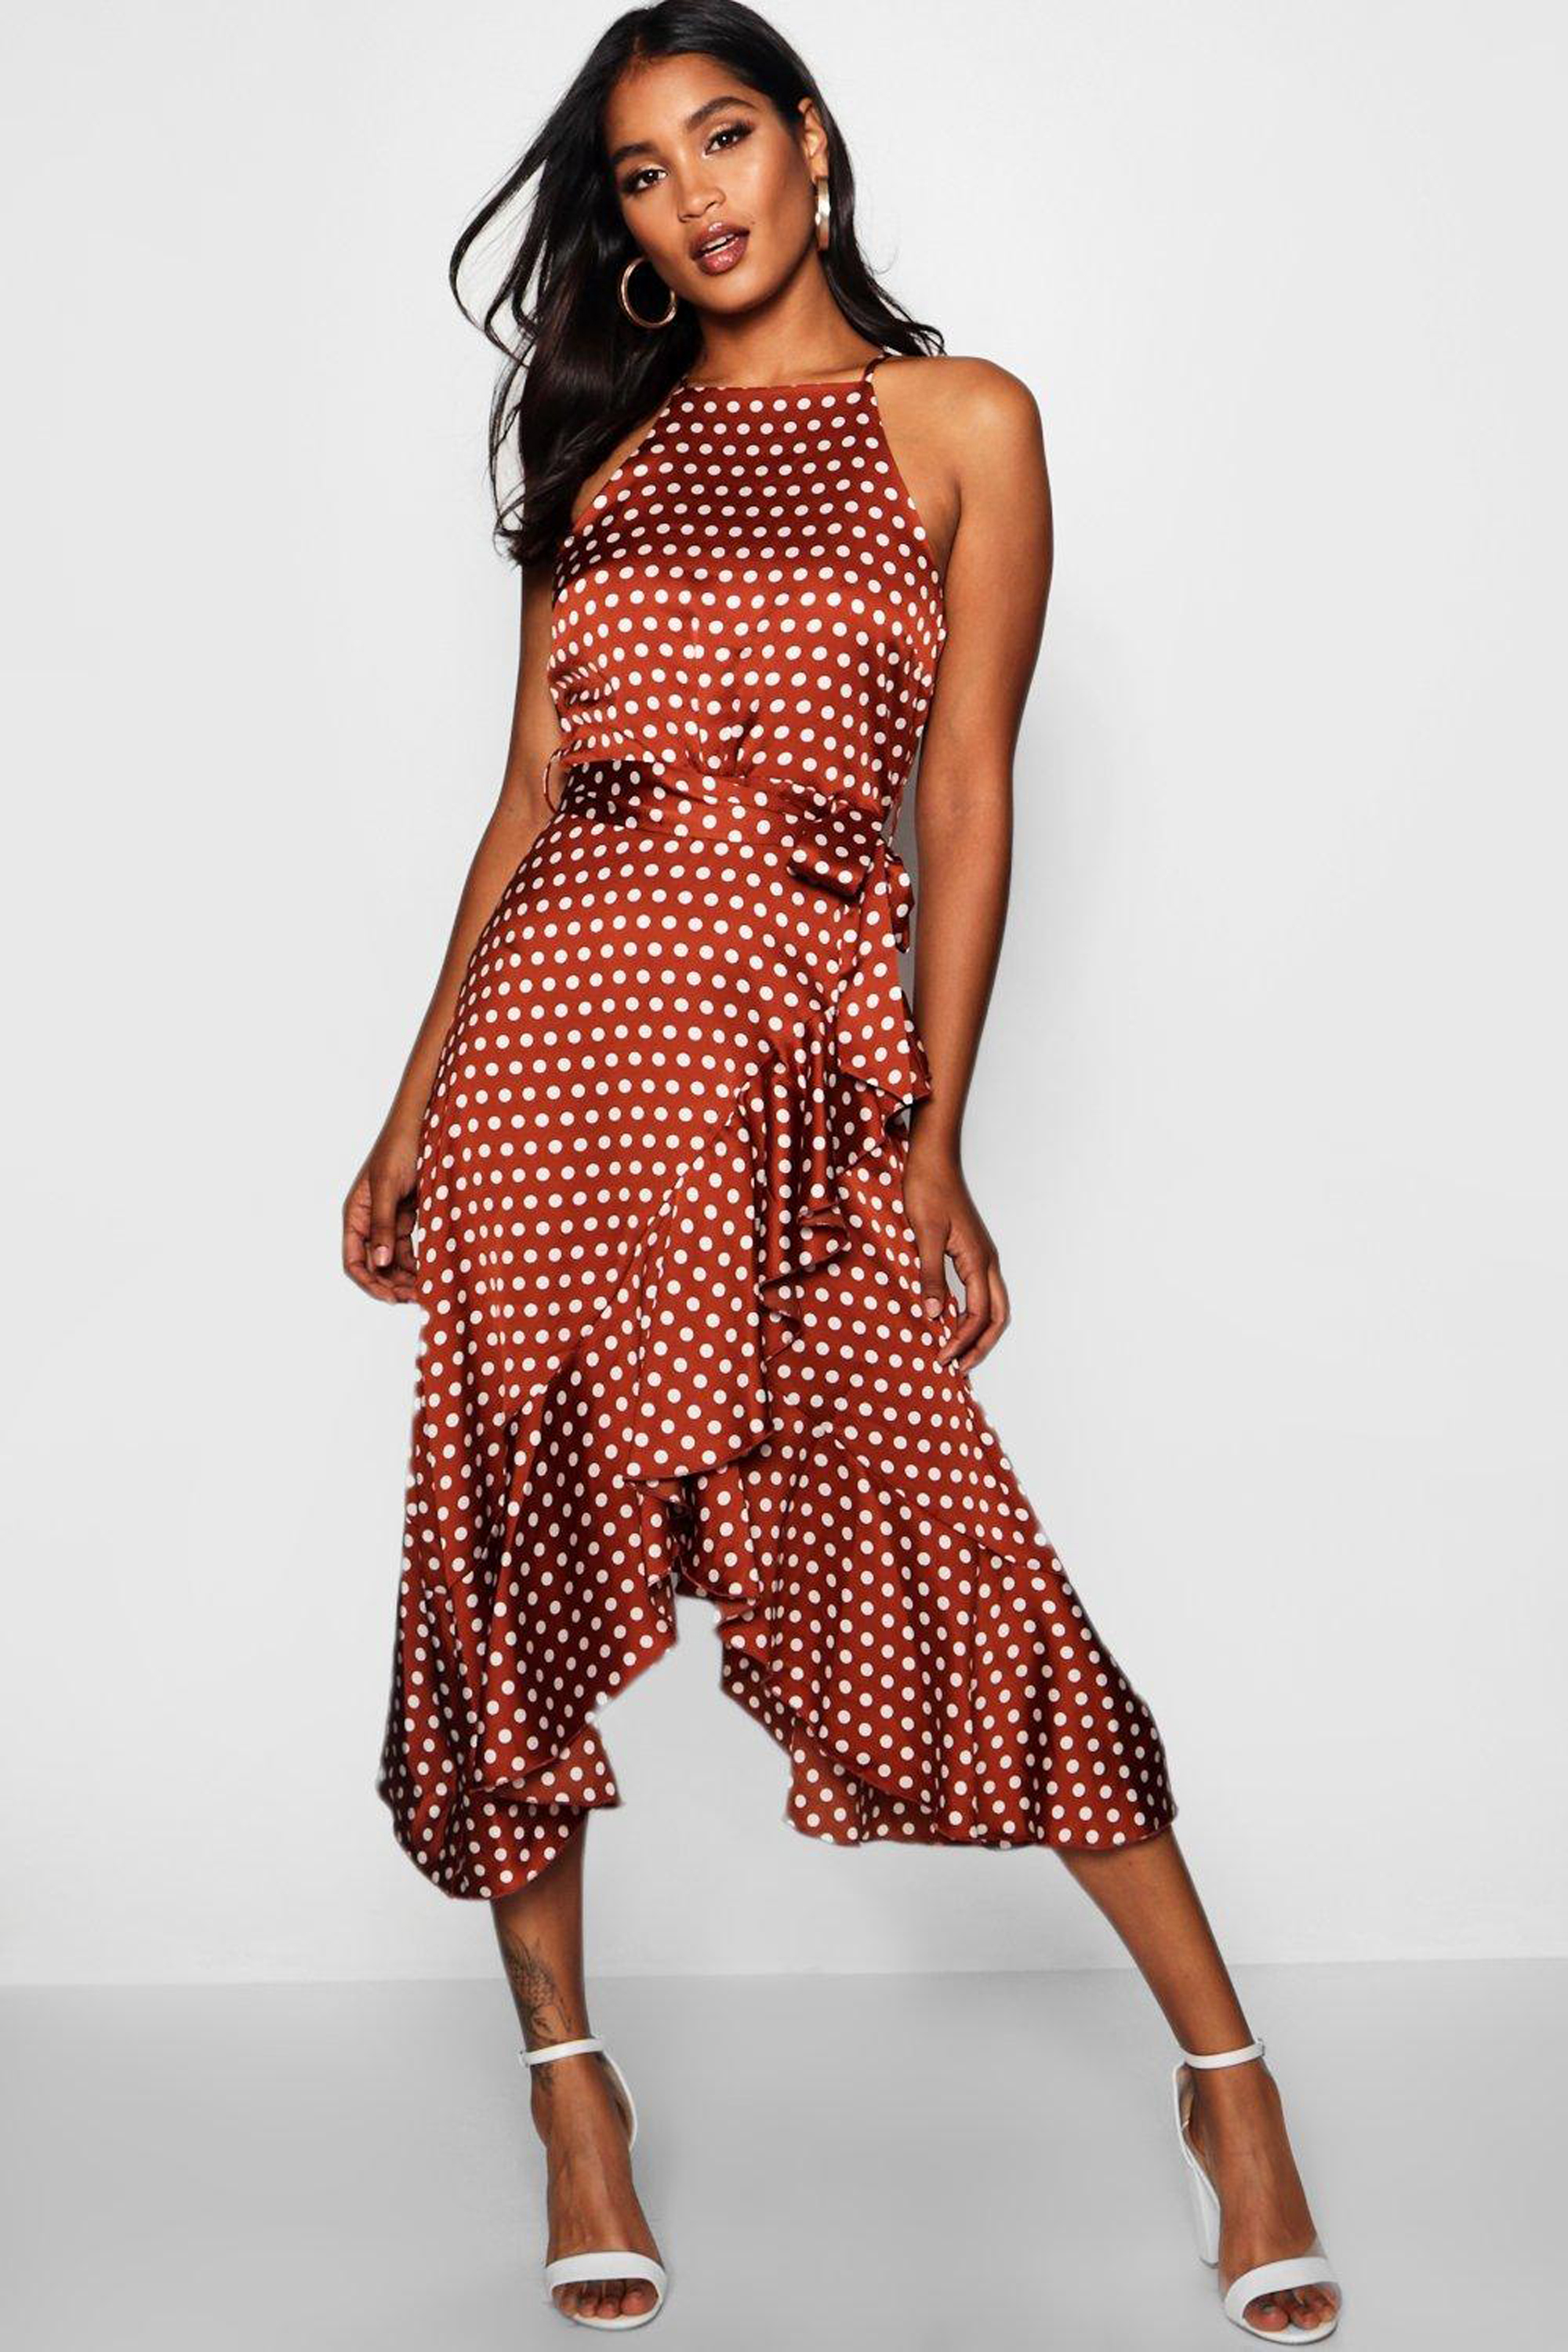 5 polka dot dresses that will make you feel like a Pretty Woman ...